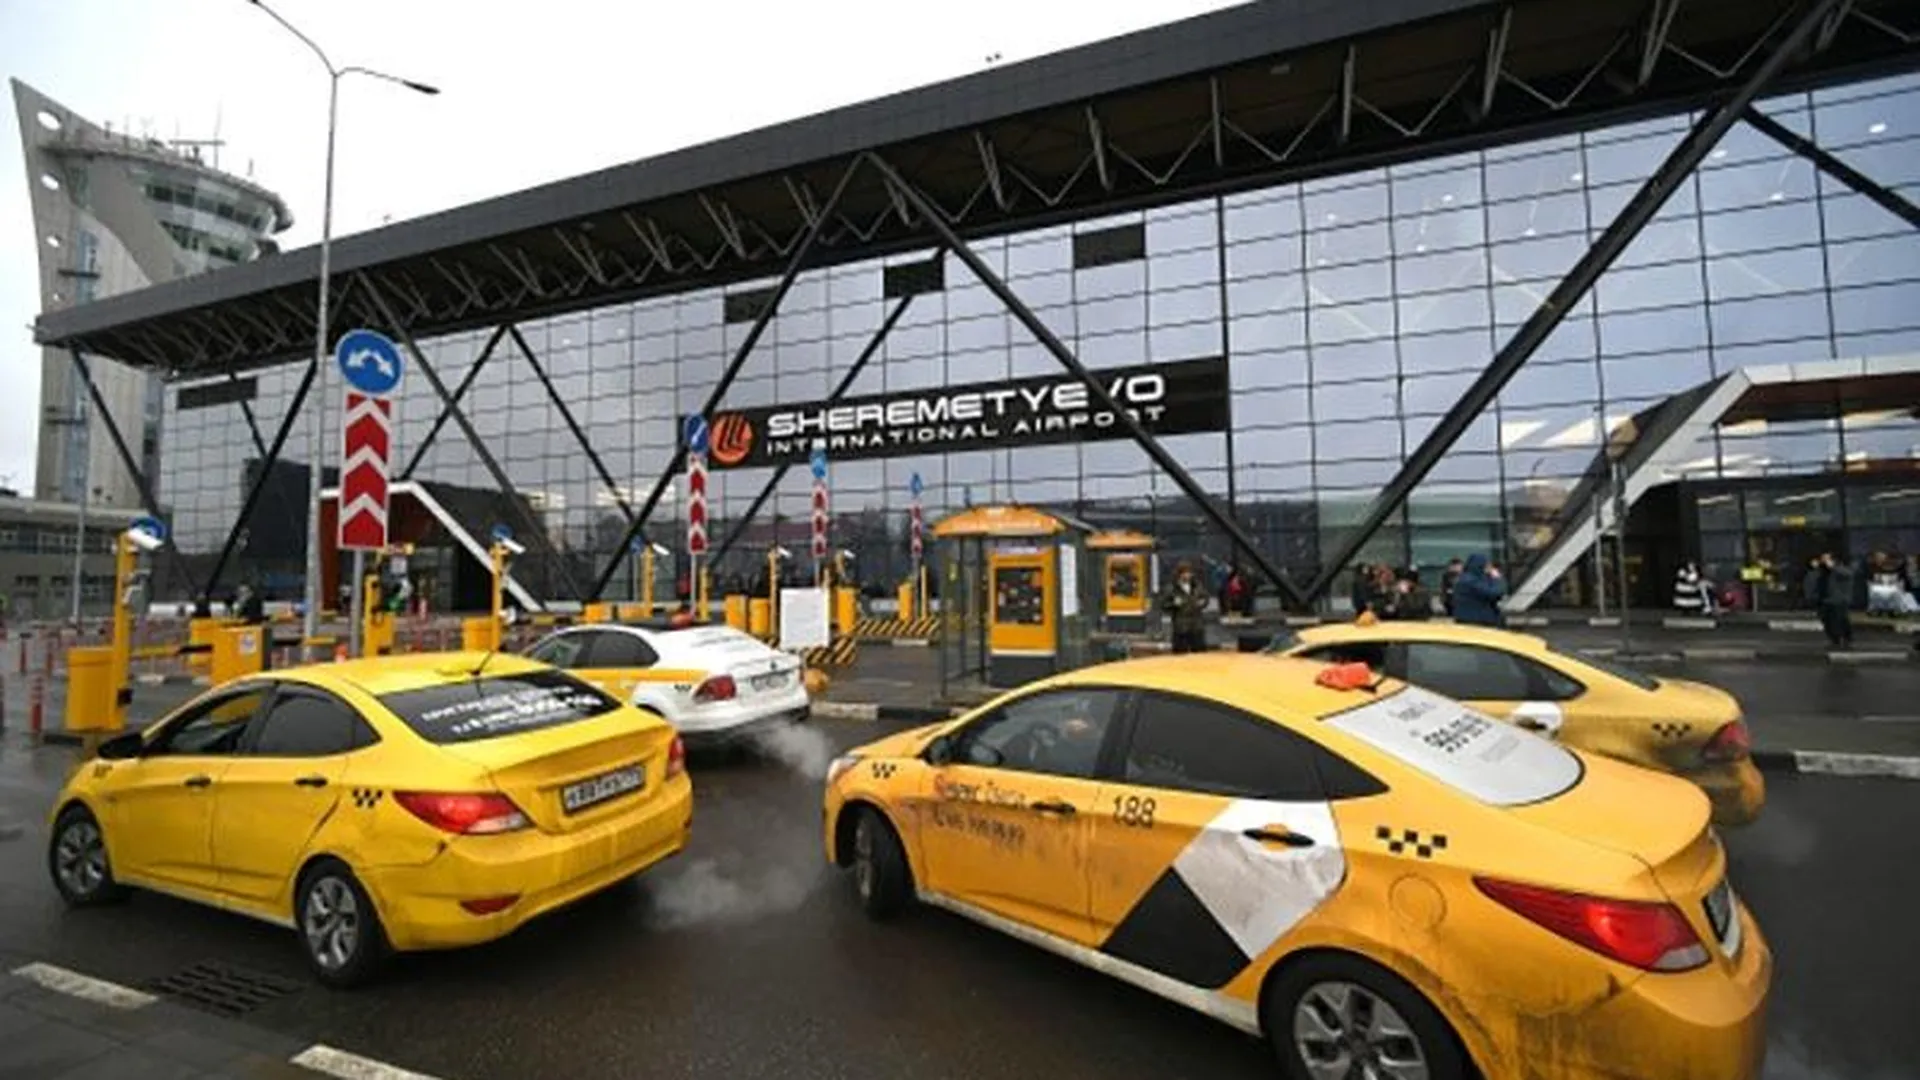 Бесплатные маски водителям будет выдавать крупный агрегатор такси в Шереметьево